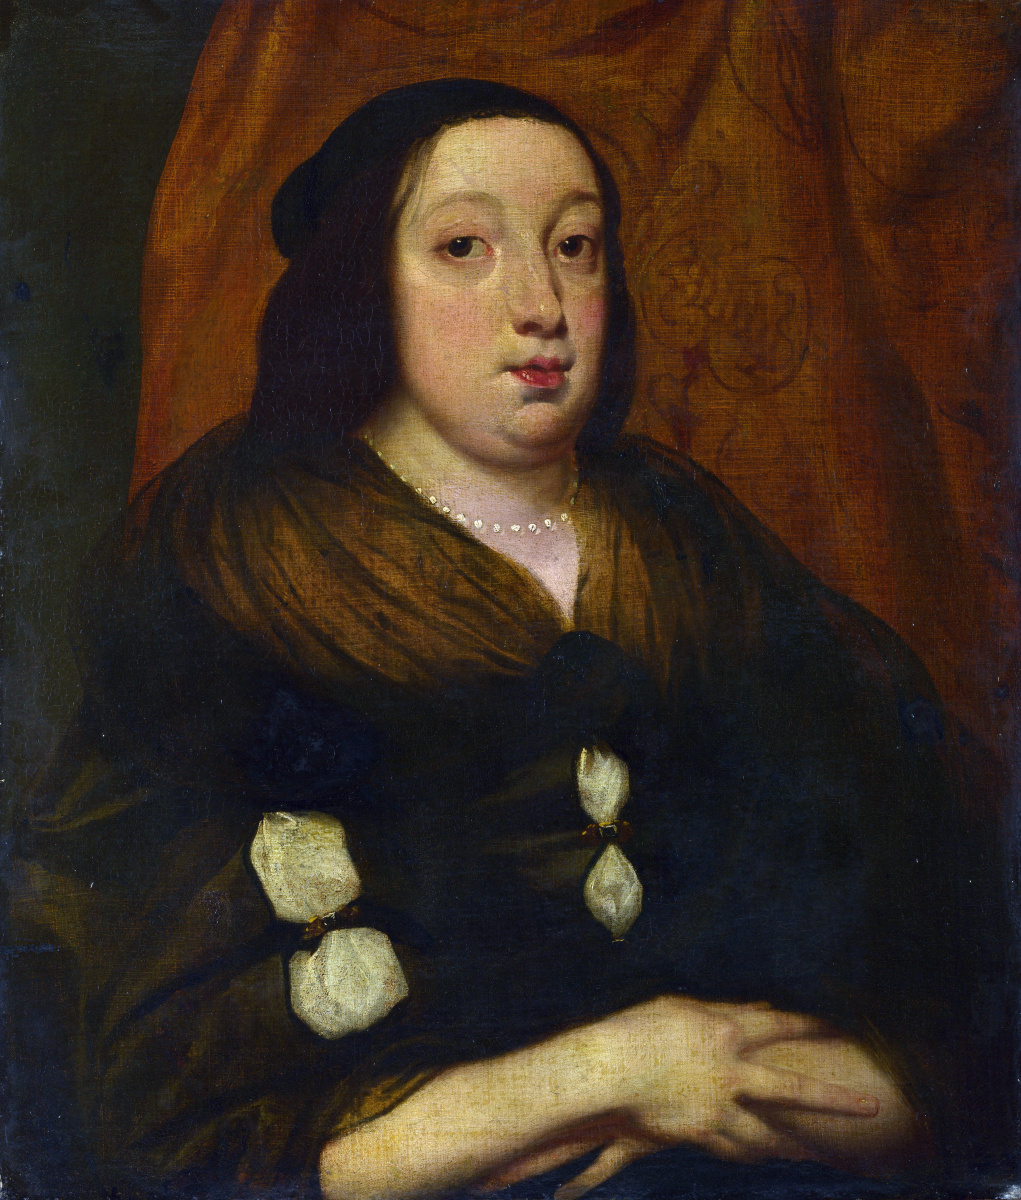 Flemish. Portrait of an elderly woman